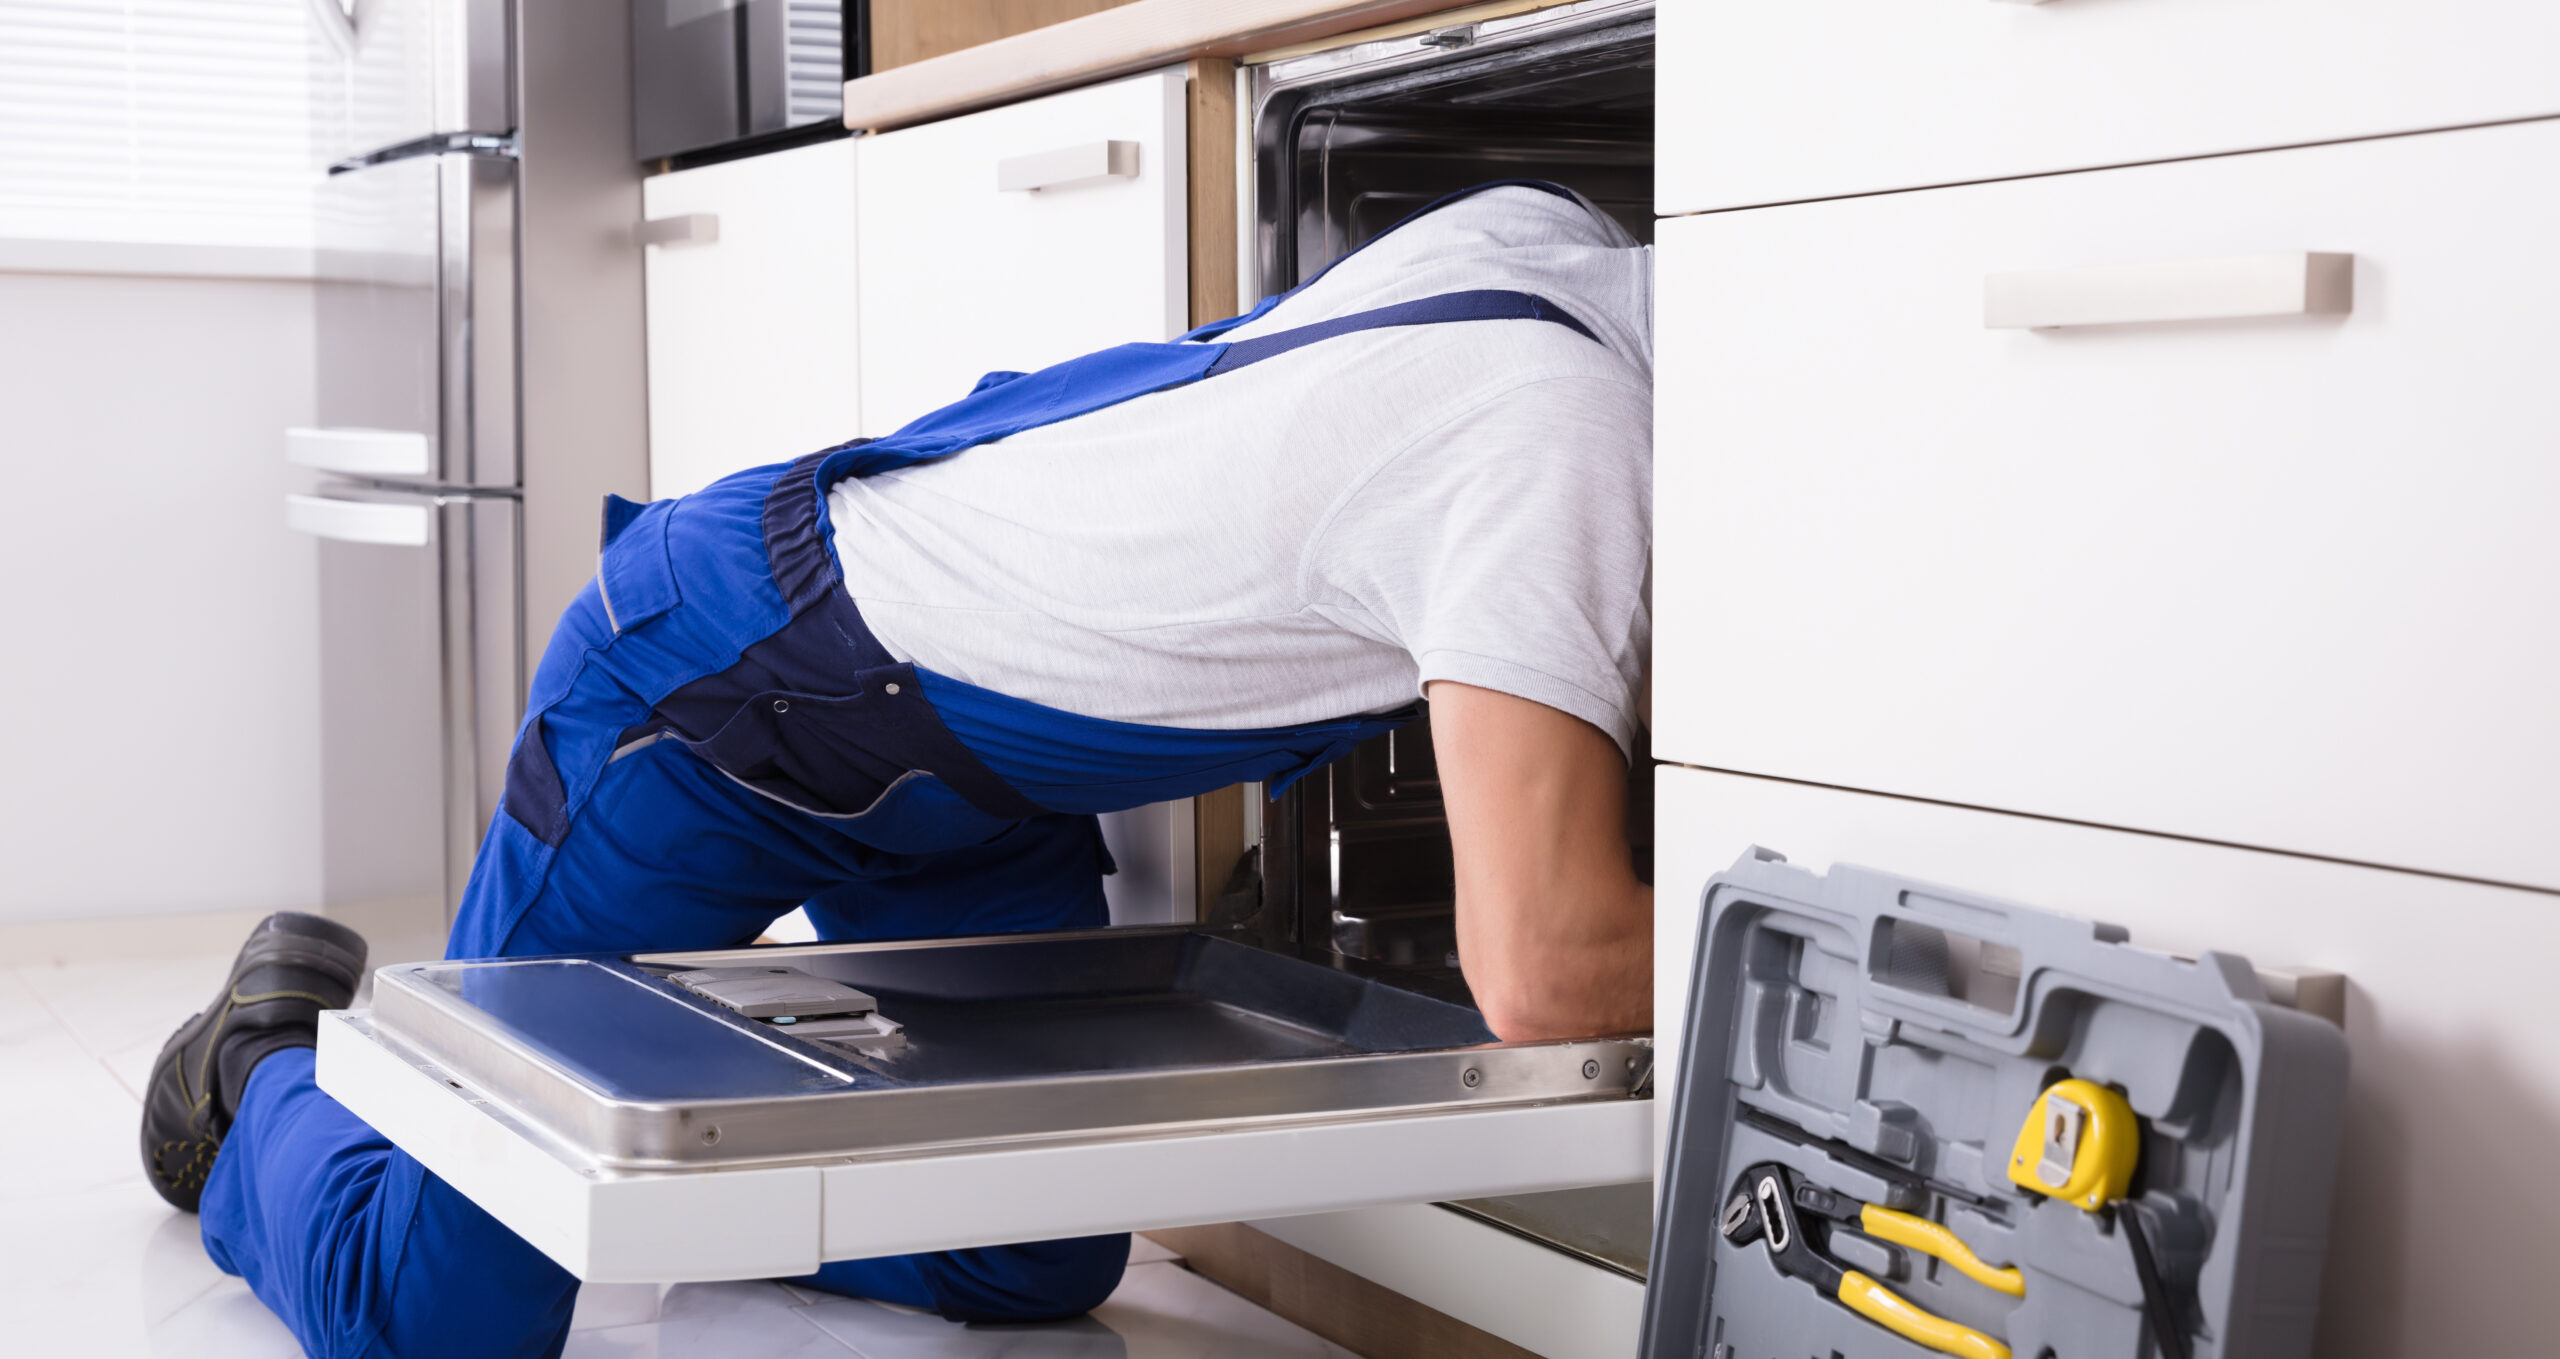 Instalar un descalcificador alarga la vida útil de los electrodomésticos